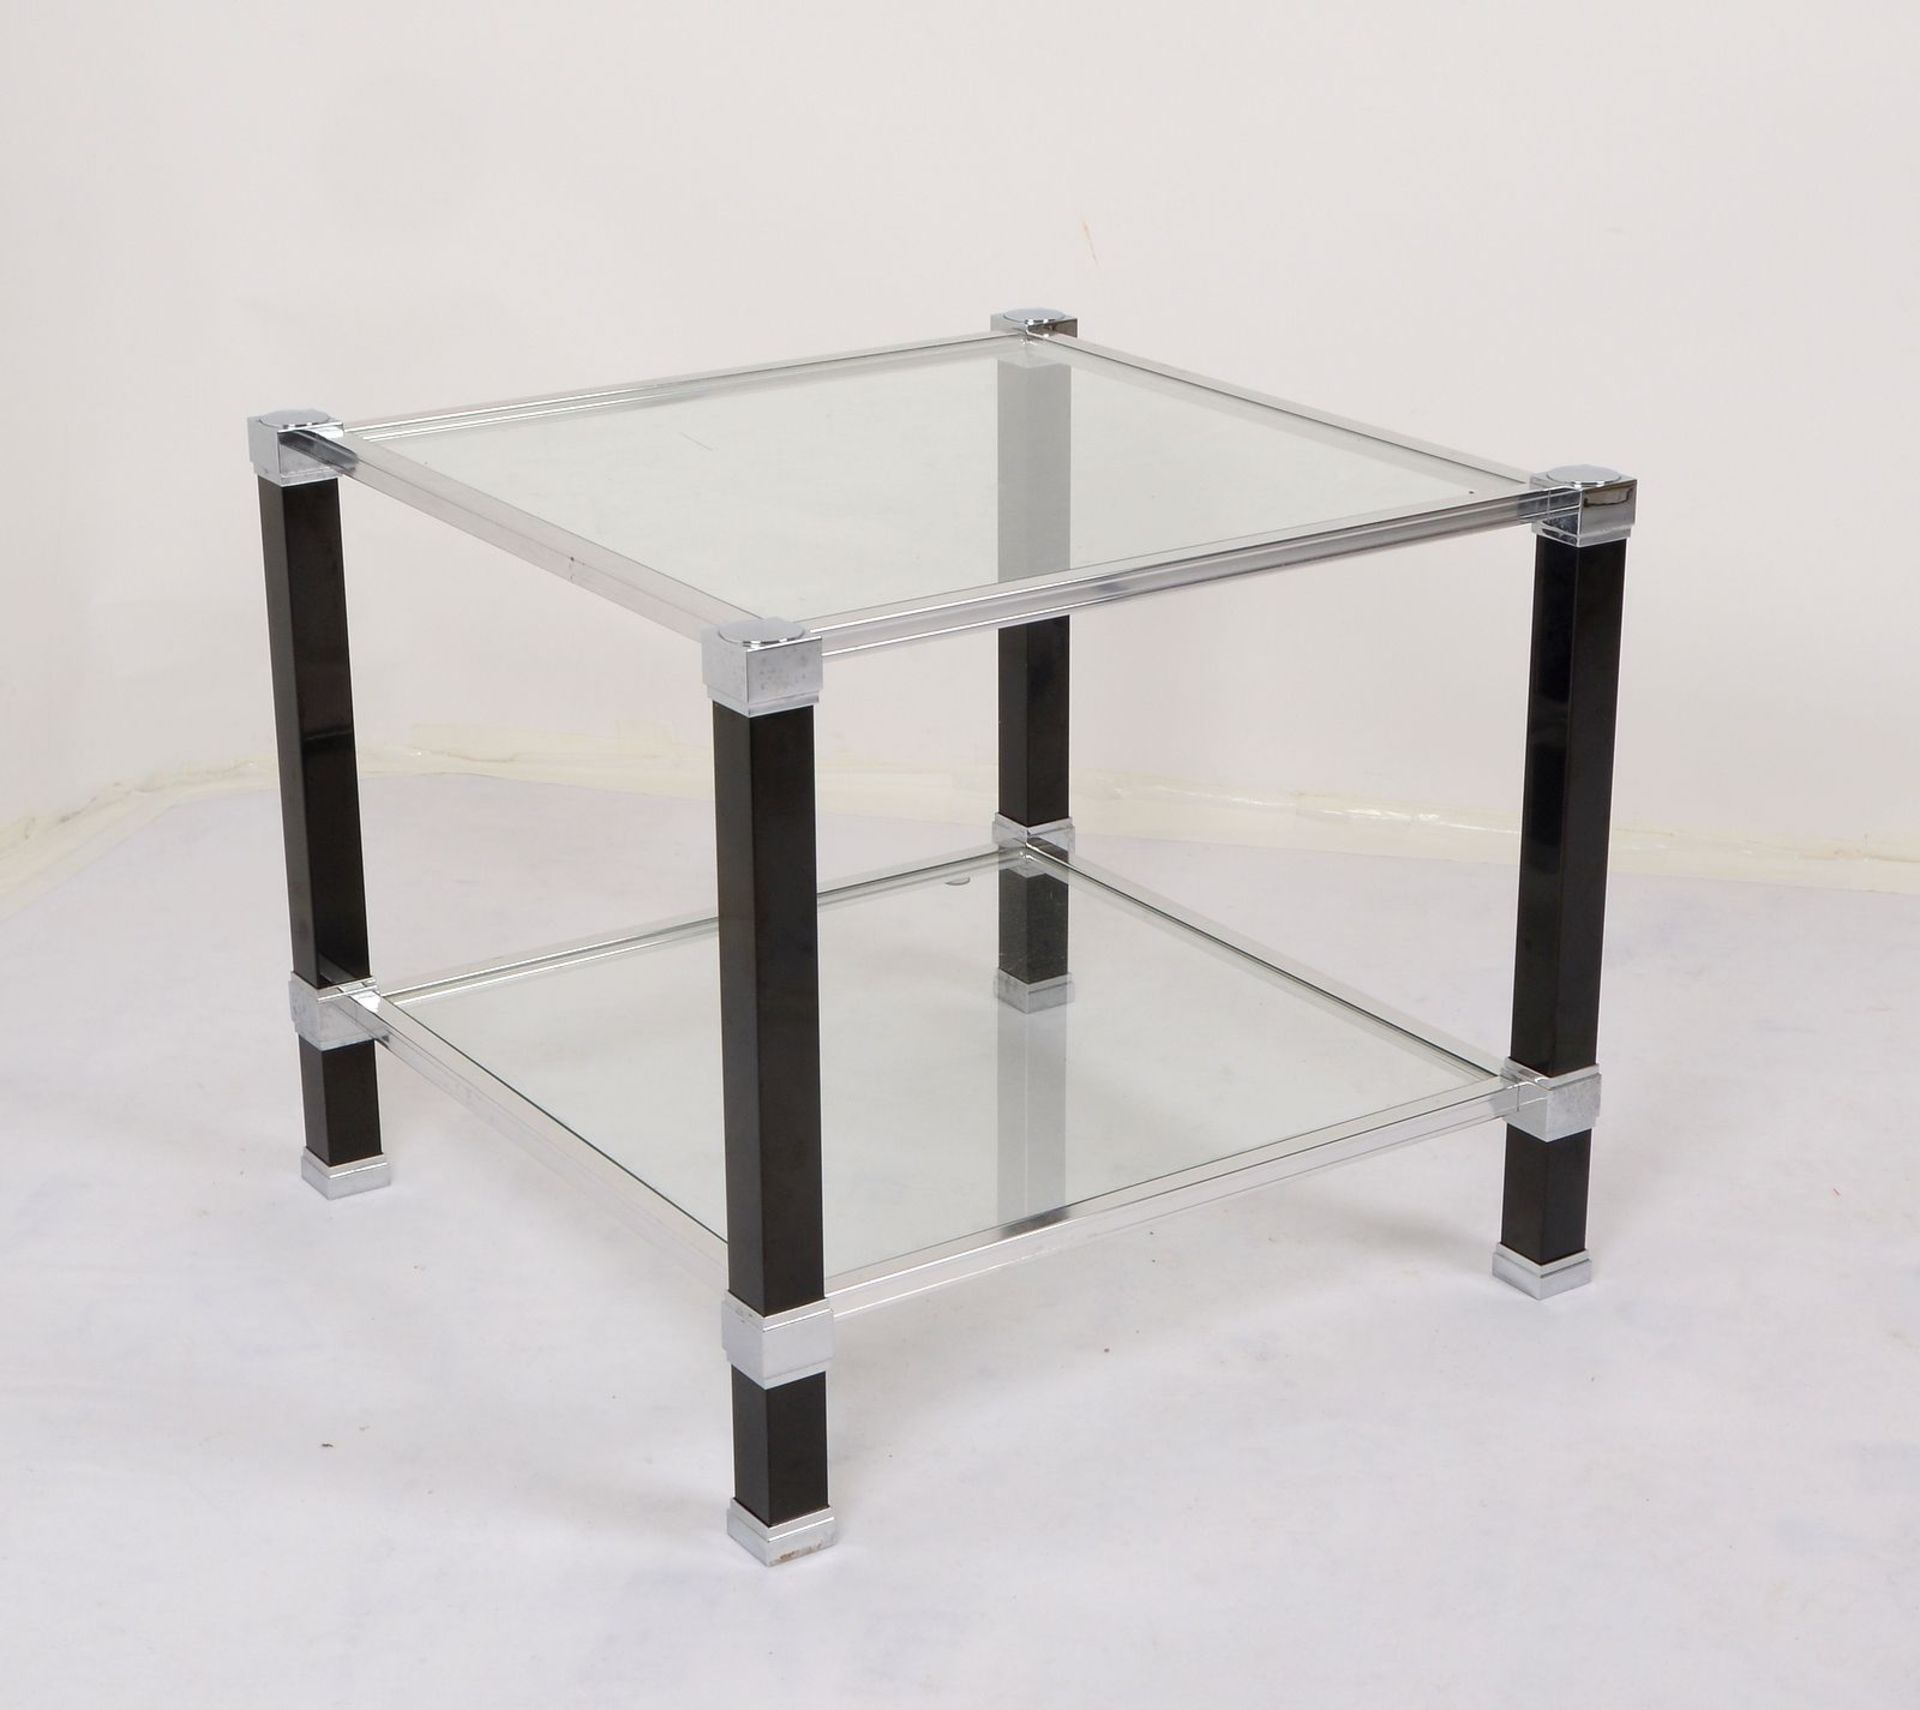 Pierre Vandel/Paris, Beistelltisch, verchromtes Metall mit 2x Glasebenen, Tischbeine schwarz lackier